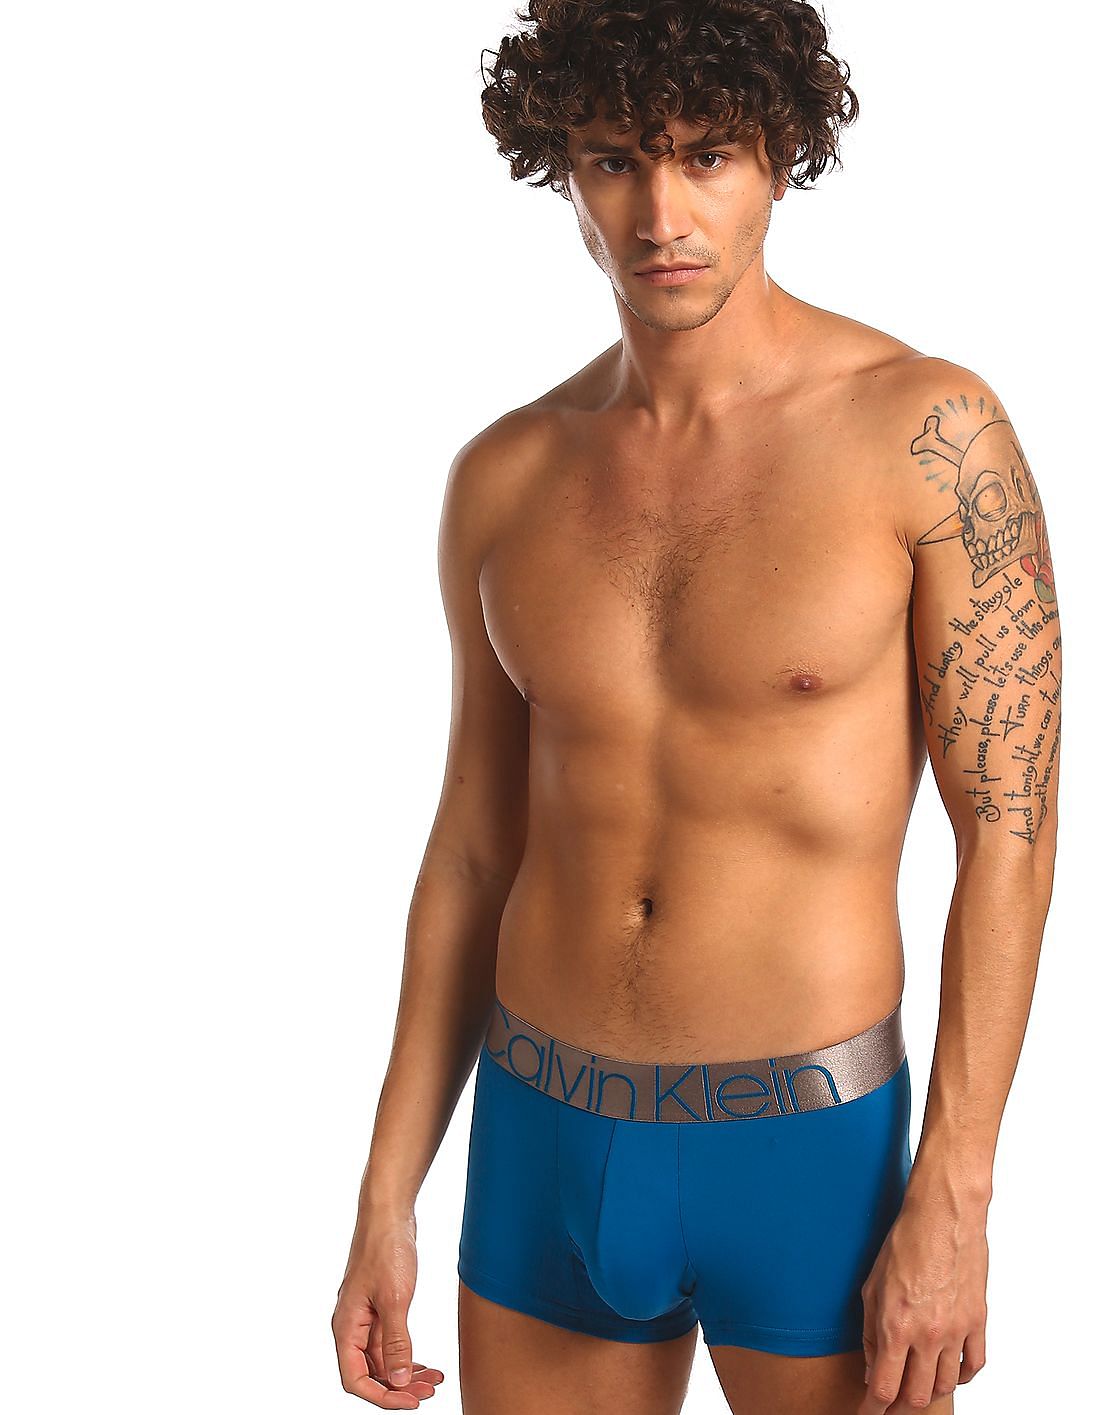 Calvin Klein Underwear - Underwear Men Blue